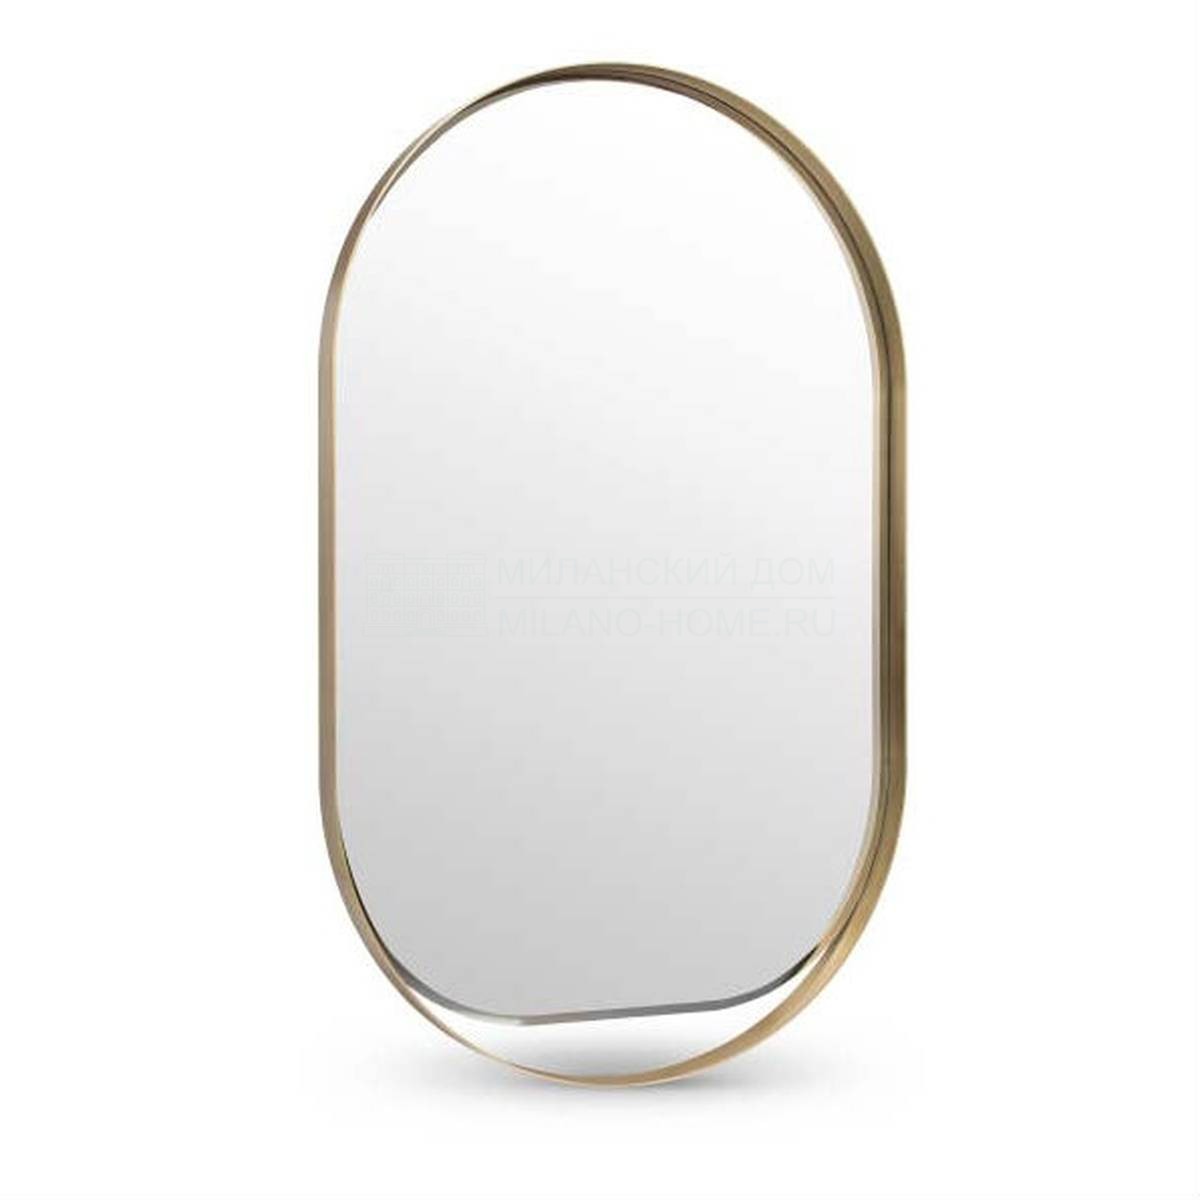 Зеркало настенное Gyselle mirror из Италии фабрики ANGELO CAPPELLINI OPERA